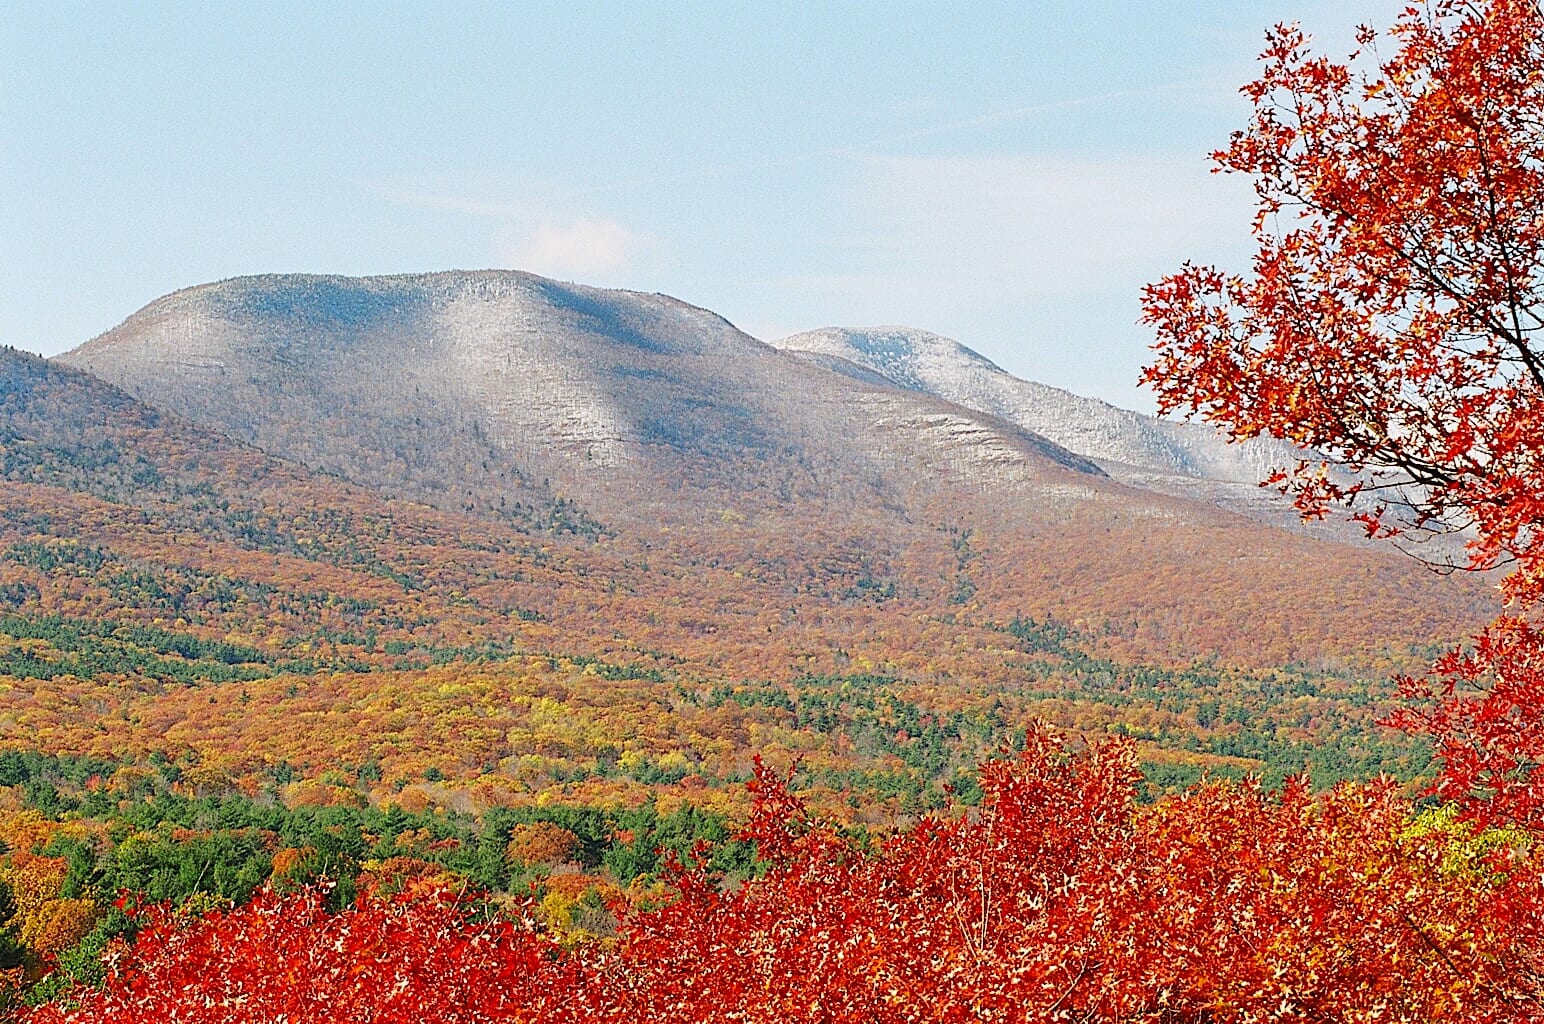 Catskills mountains in autumn.